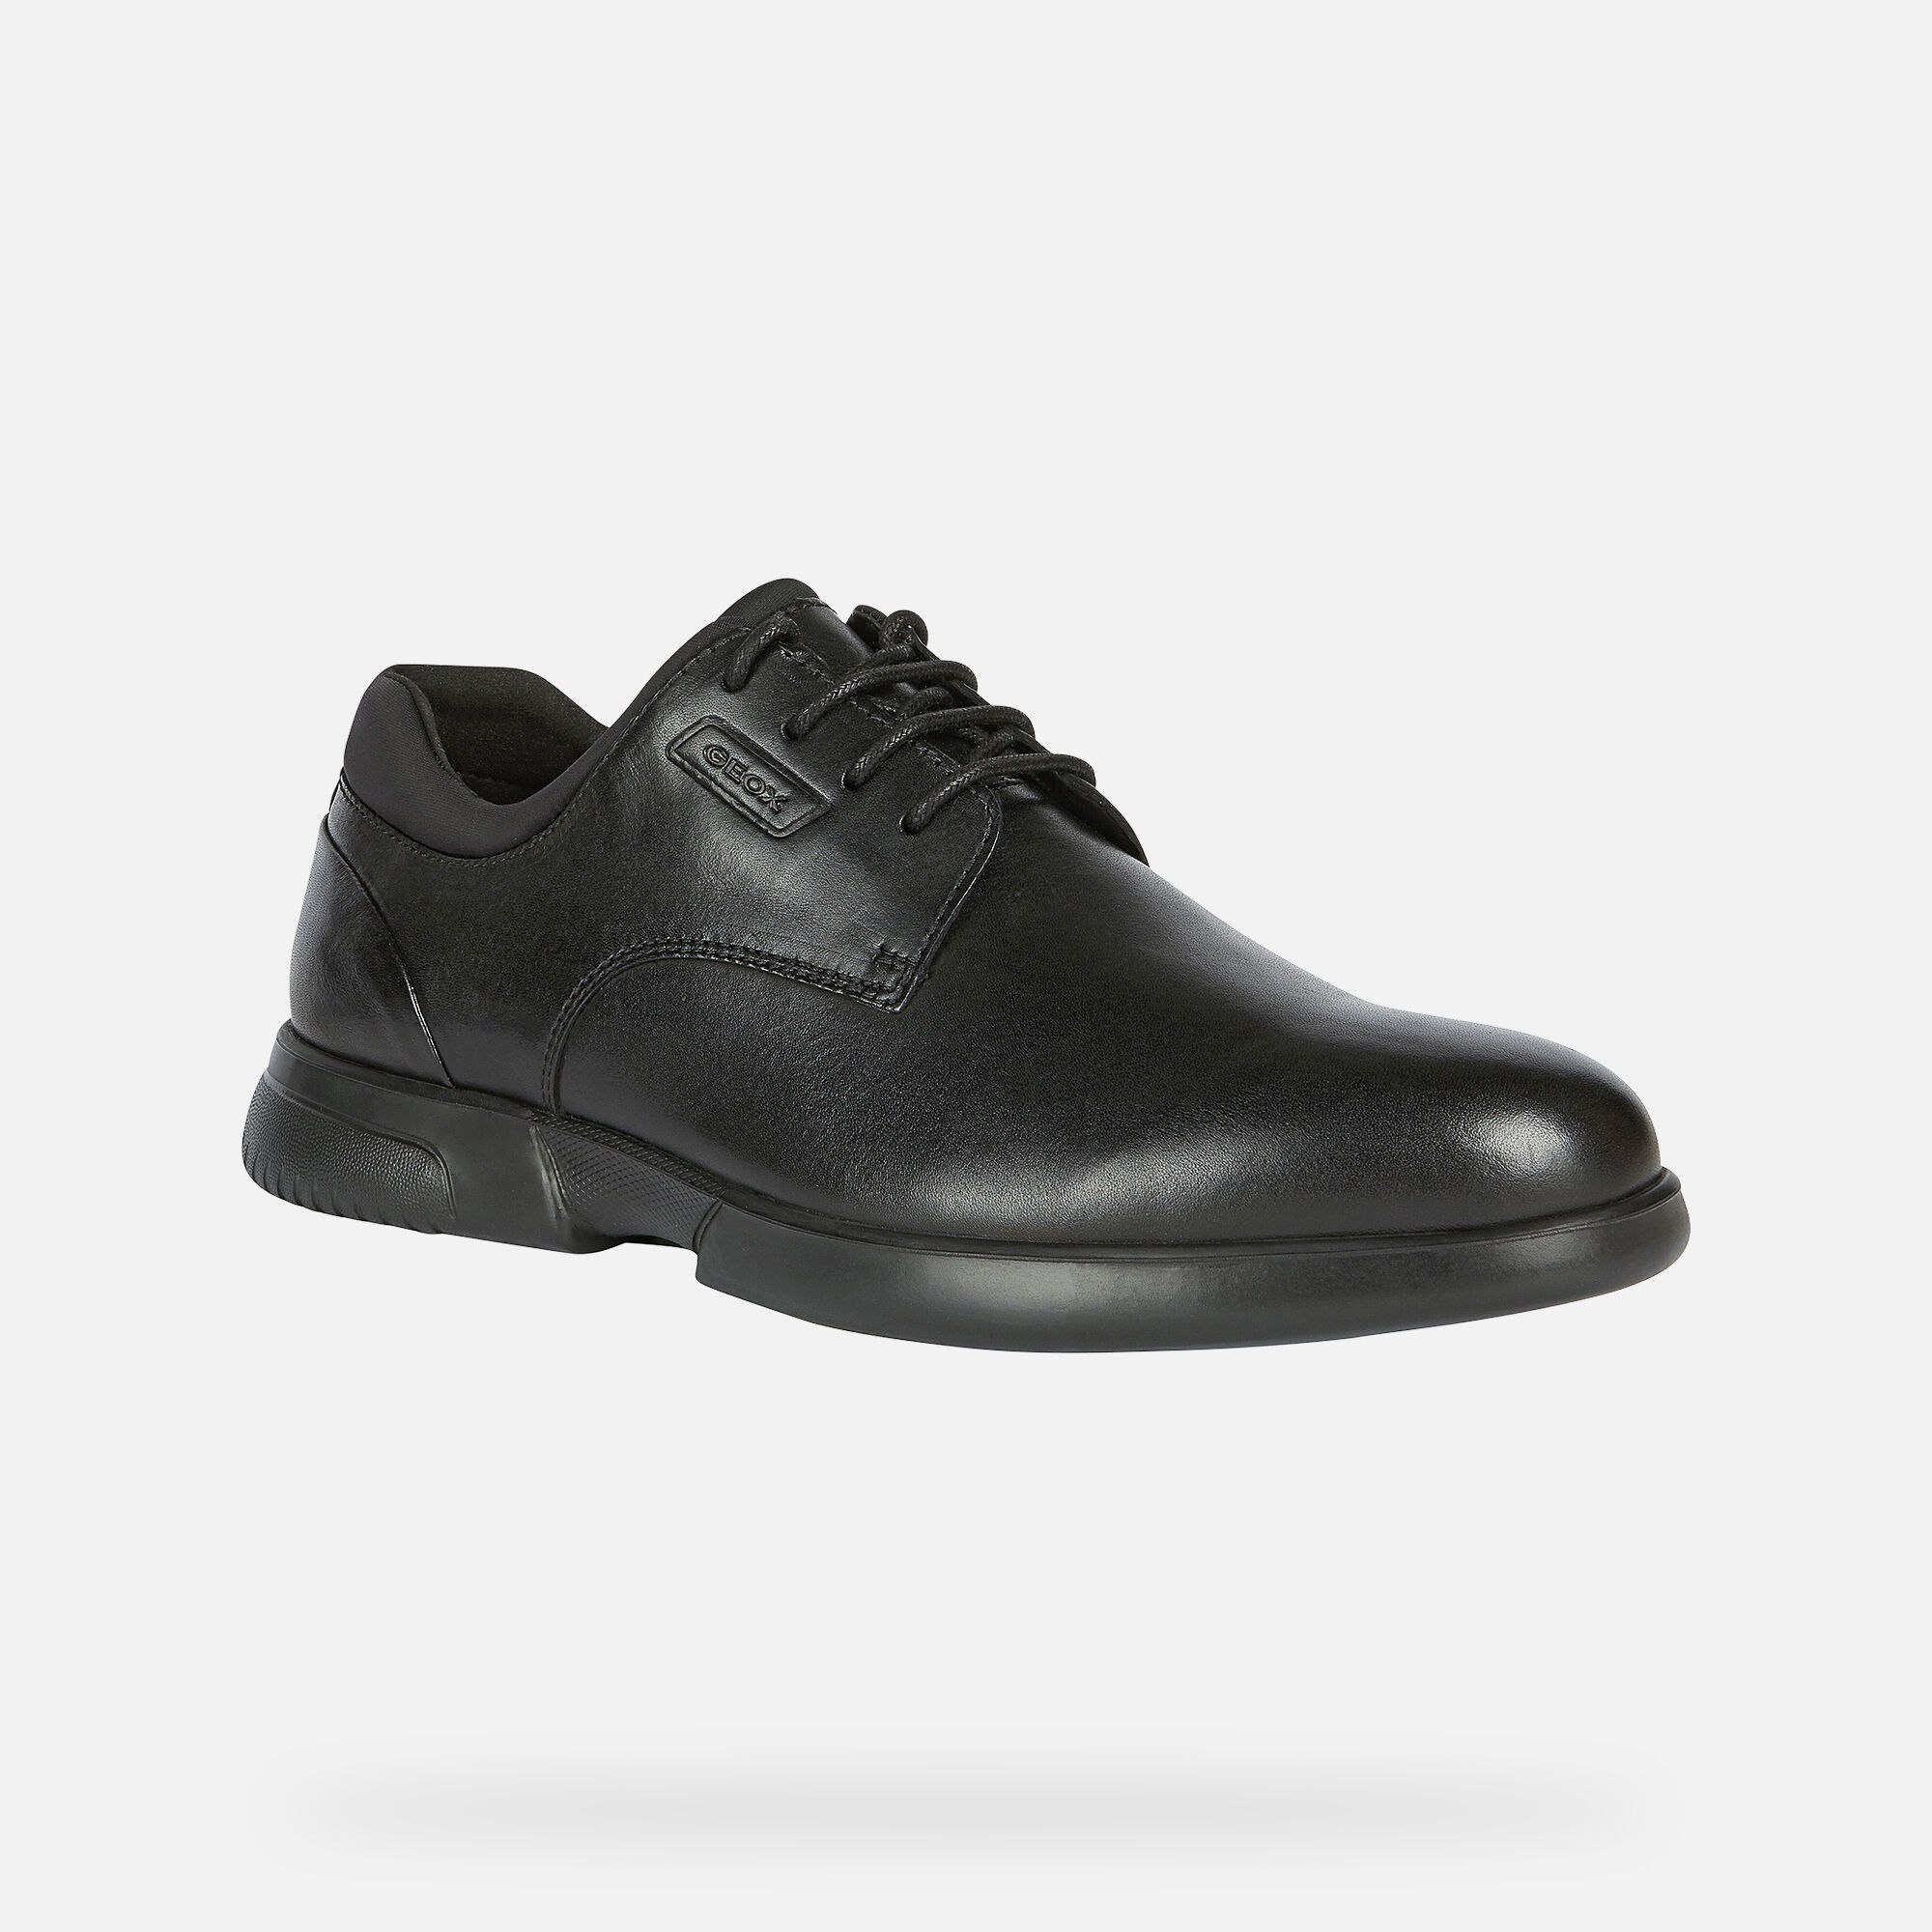 Geox мужская обувь купить. Geox 2018 ботинки мужские кожаные черные. Geox respira классические ботинки мужские 43. Ботинки мужские черные Geox respira Patent e.p. 0332 904. Ботинки Geox u047hd черный,.